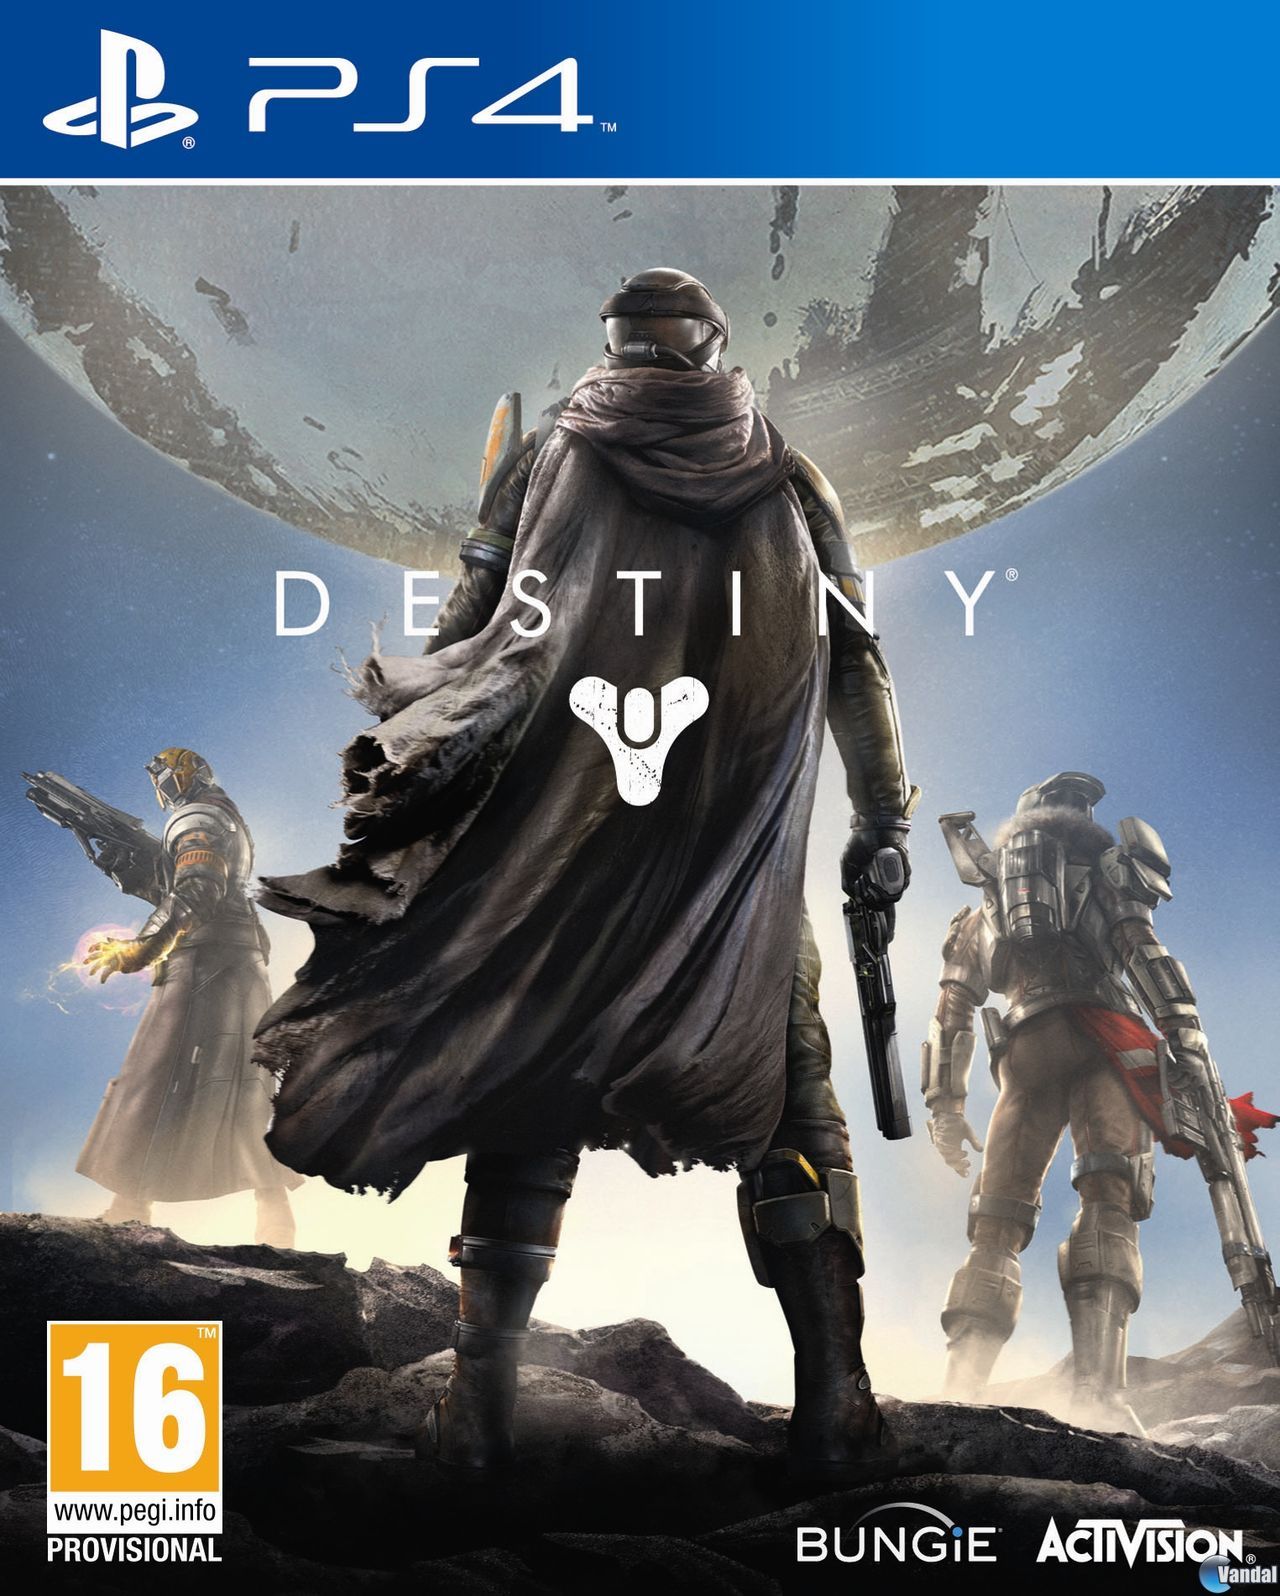 Fecha de lanzamiento Destiny - PS4, PS3, Xbox 360, Xbox One